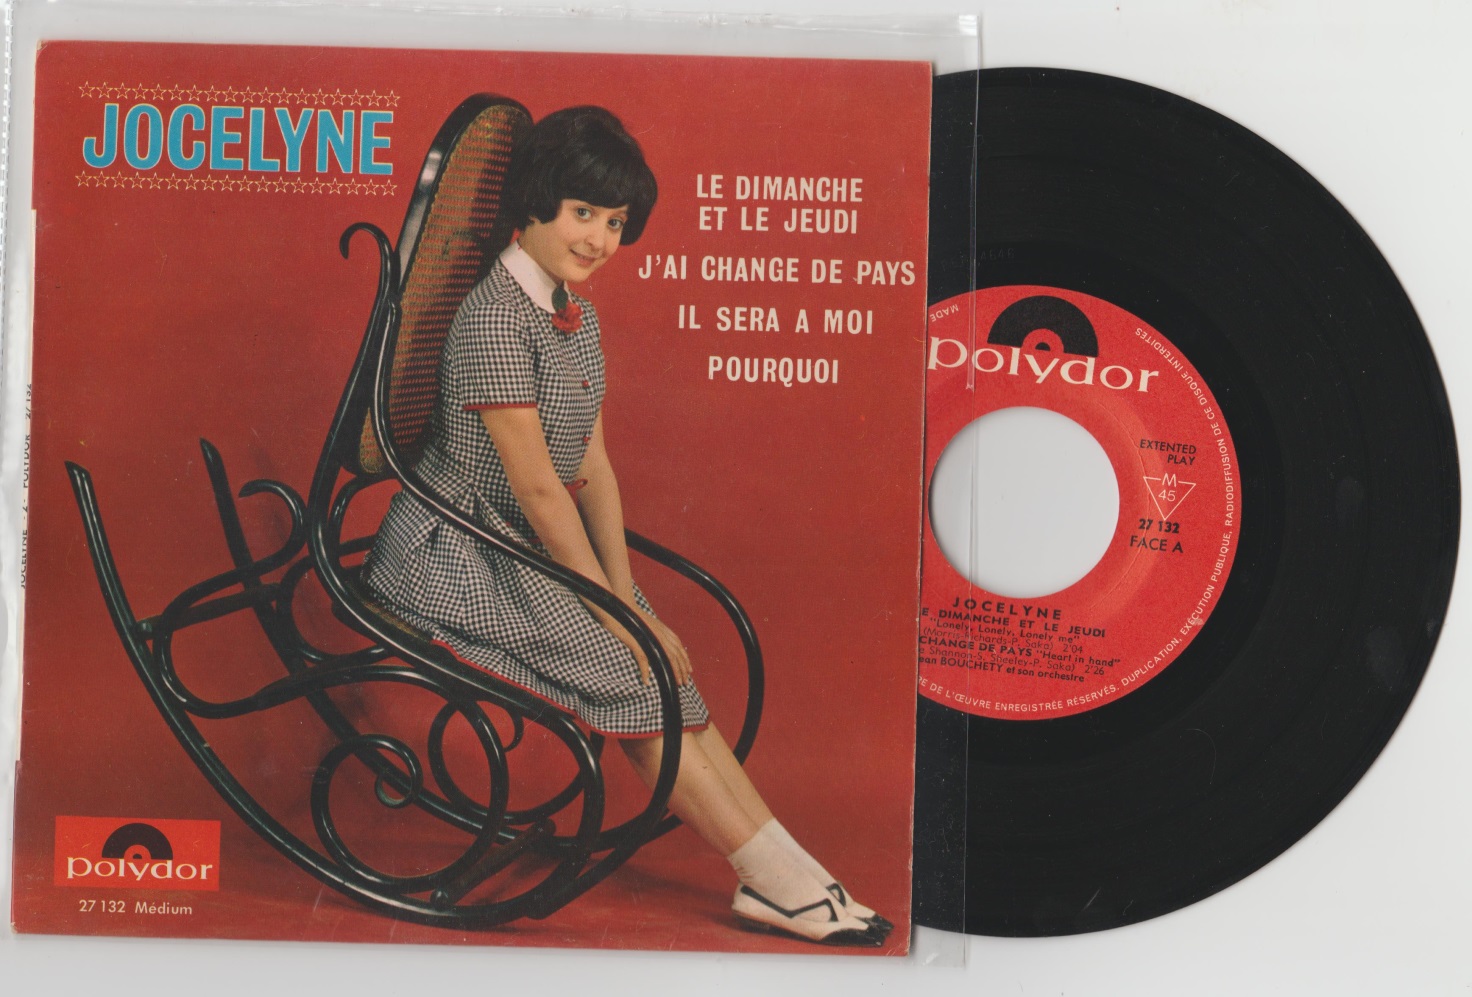 1964  disque Polydor  (collection perso)